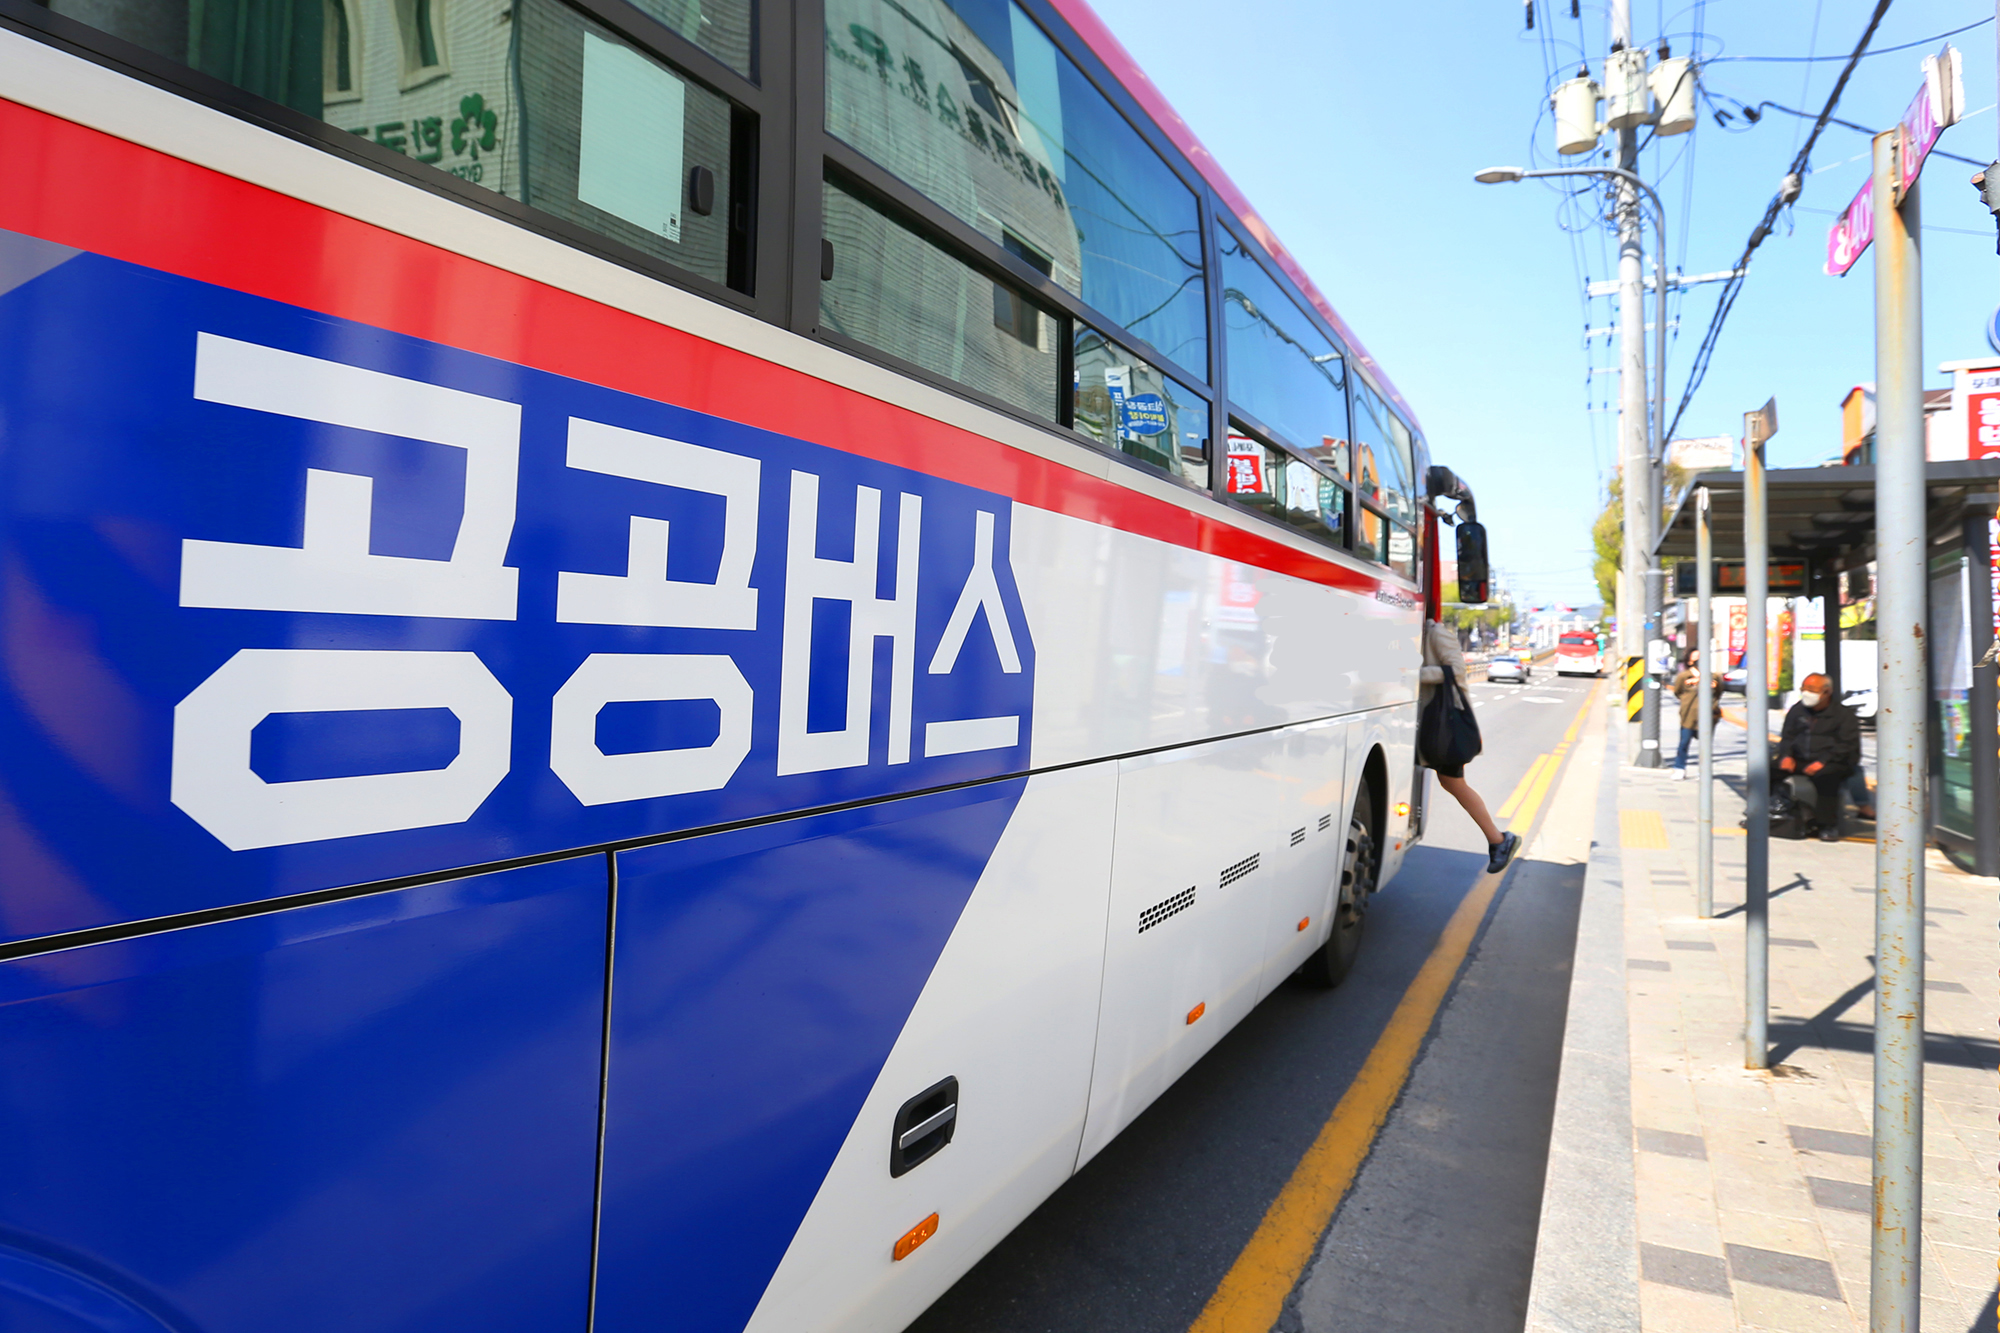 경기도는 오는 22일부터 사당역 운행 공공버스를 대상으로 경기도 공공버스를 예약하고 탈 수 있는 ‘공공버스 간편 예약제’ 시범서비스를 실시한다. 